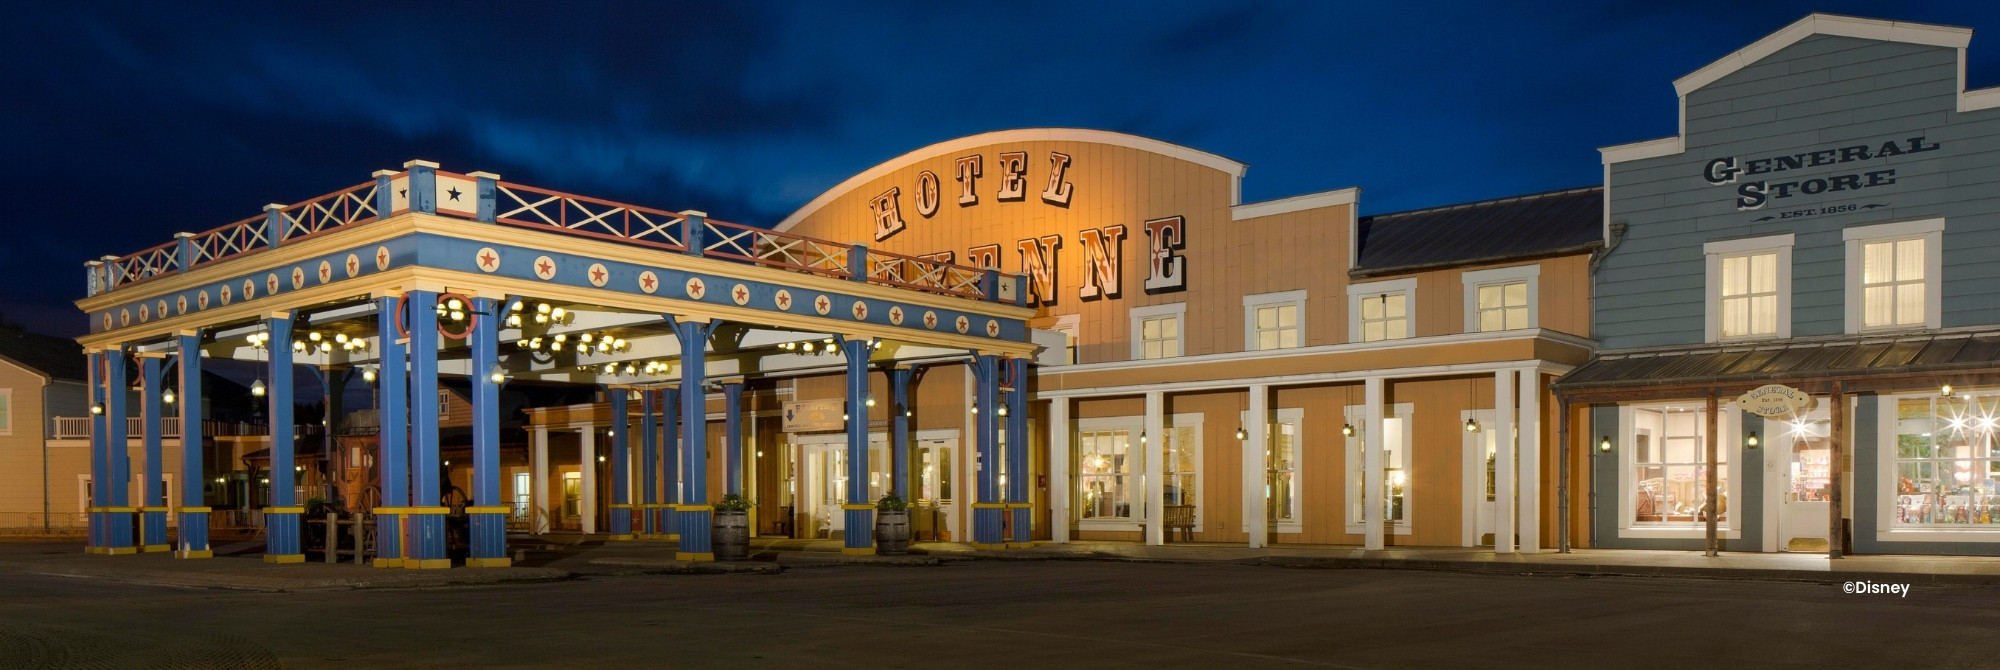 Beleuchtete Fassade des Disney Hotel Cheyenne